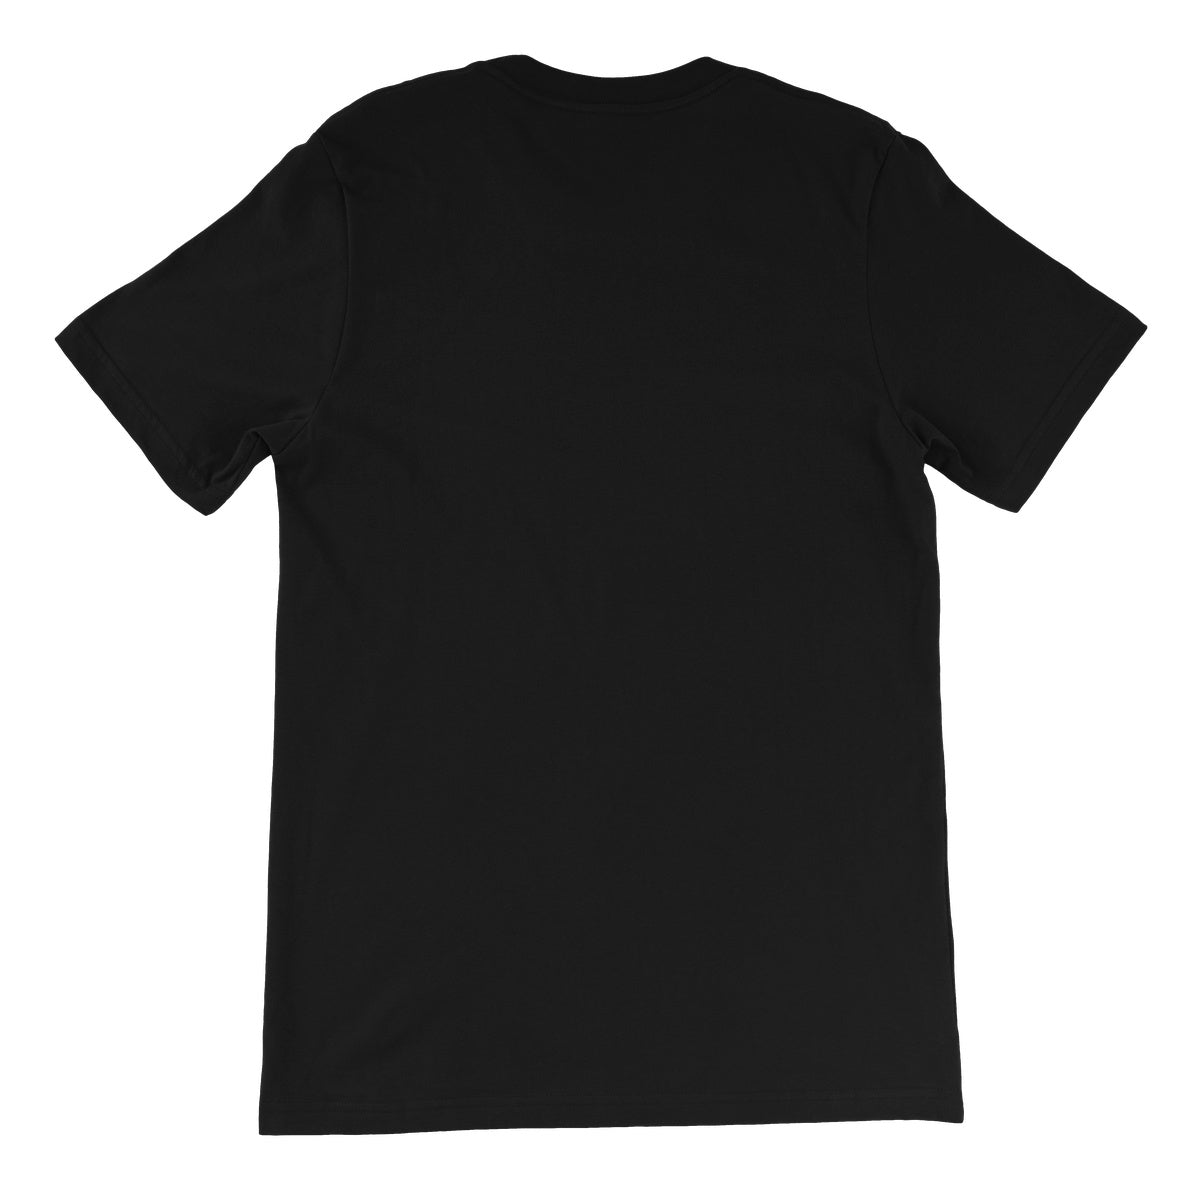 CxE Shamrocks and Shenanigans Unisex Short Sleeve T-Shirt